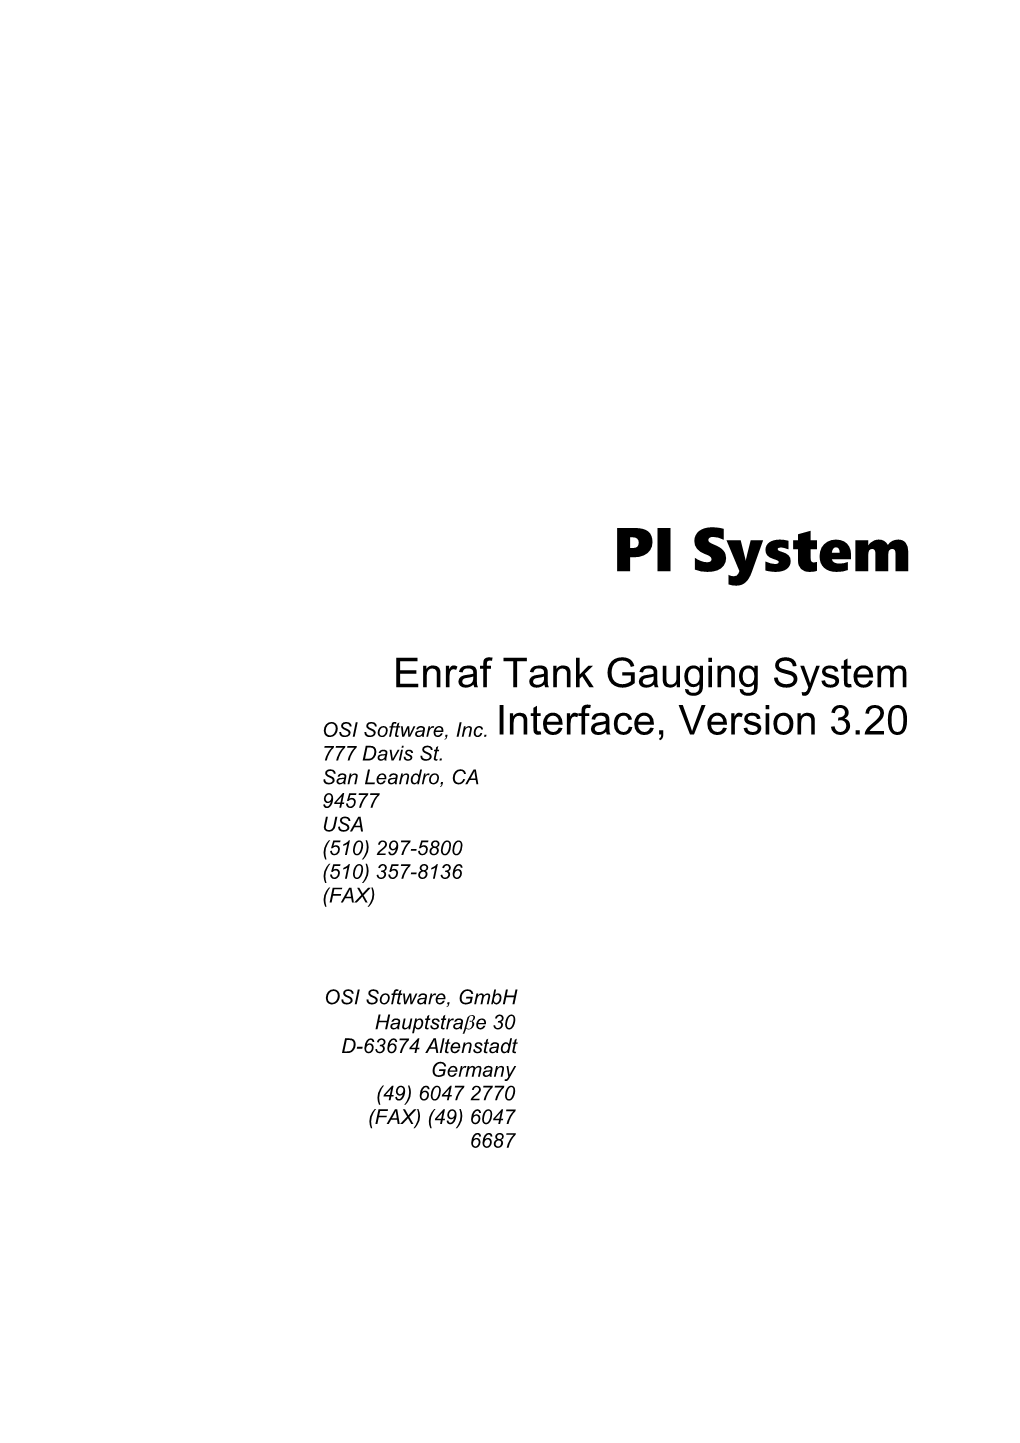 Enraf Tank Gauging System Interface